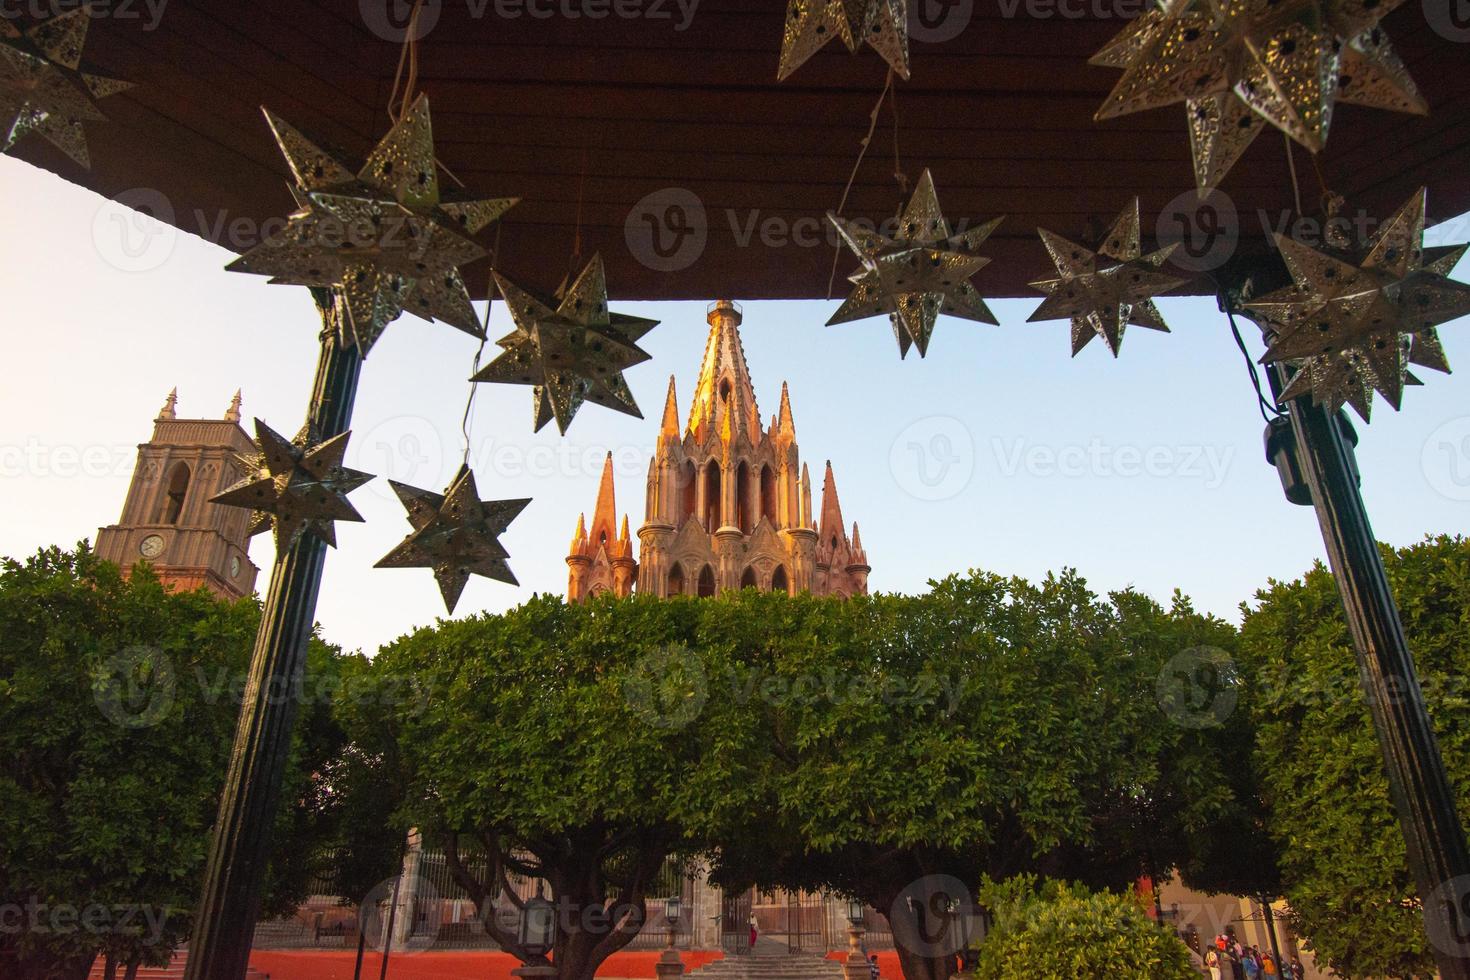 parroquia arcangel iglesia jardin plaza del pueblo rafael chruch san miguel de allende, mexico. parroaguia creada en 1600 foto